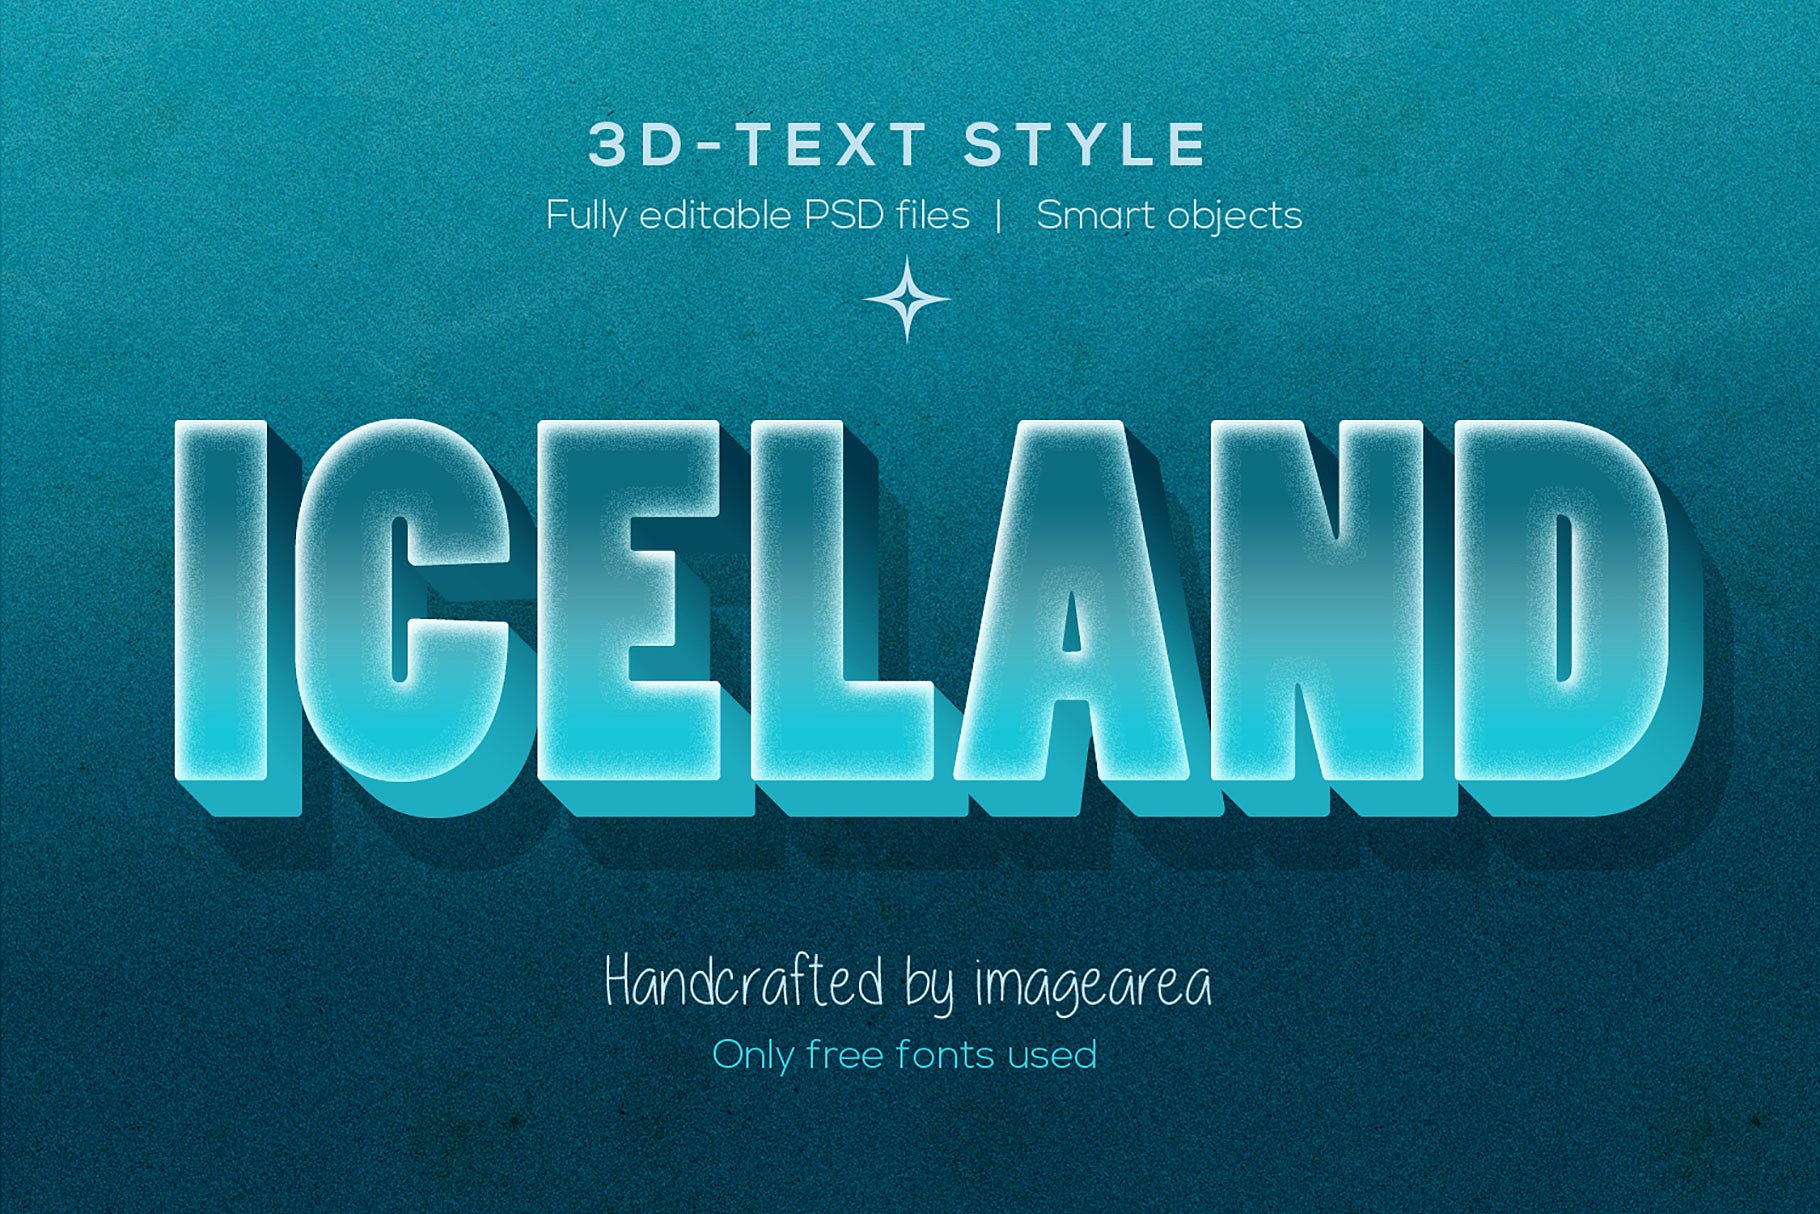 创意3D文本图层样式 Amazing 3D Text Styles插图(3)